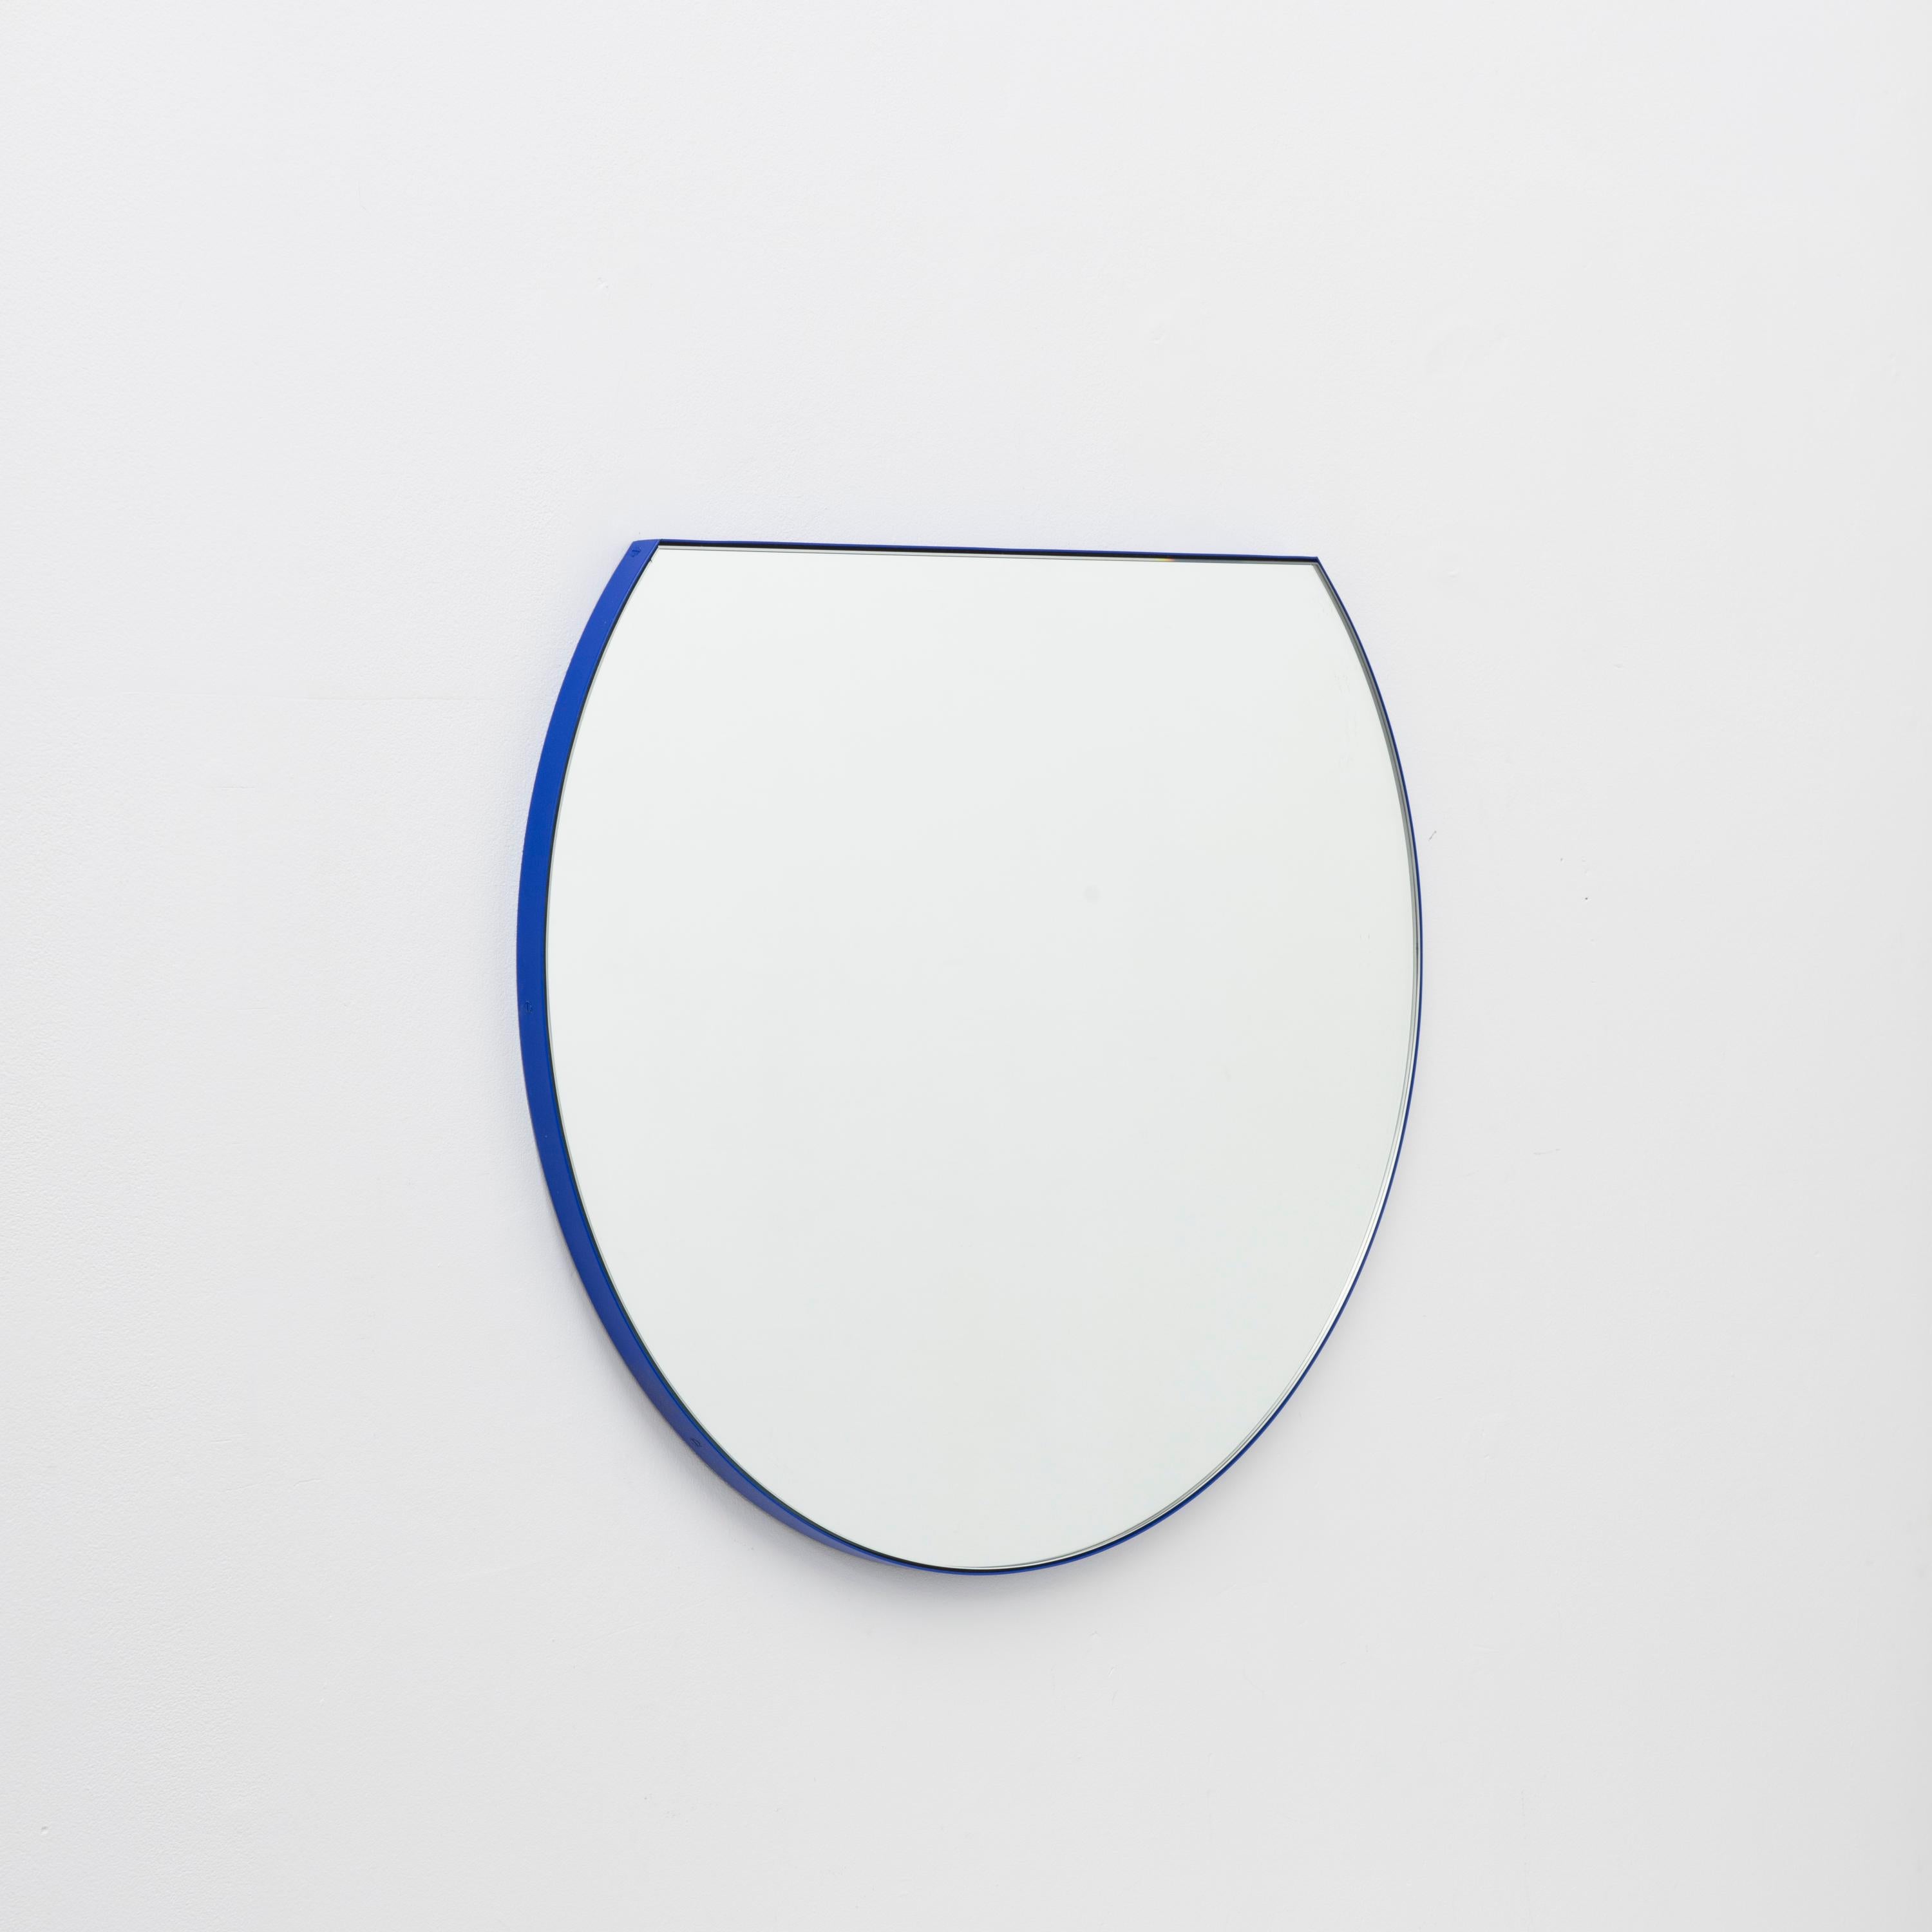 Nouveau miroir rond moderne avec un cadre bleu vibrant en aluminium peint par poudrage. Conçu et fabriqué à la main à Londres, au Royaume-Uni.

Équipé d'un crochet en laiton ou d'une barre en aluminium (en fonction de la taille du miroir) qui permet